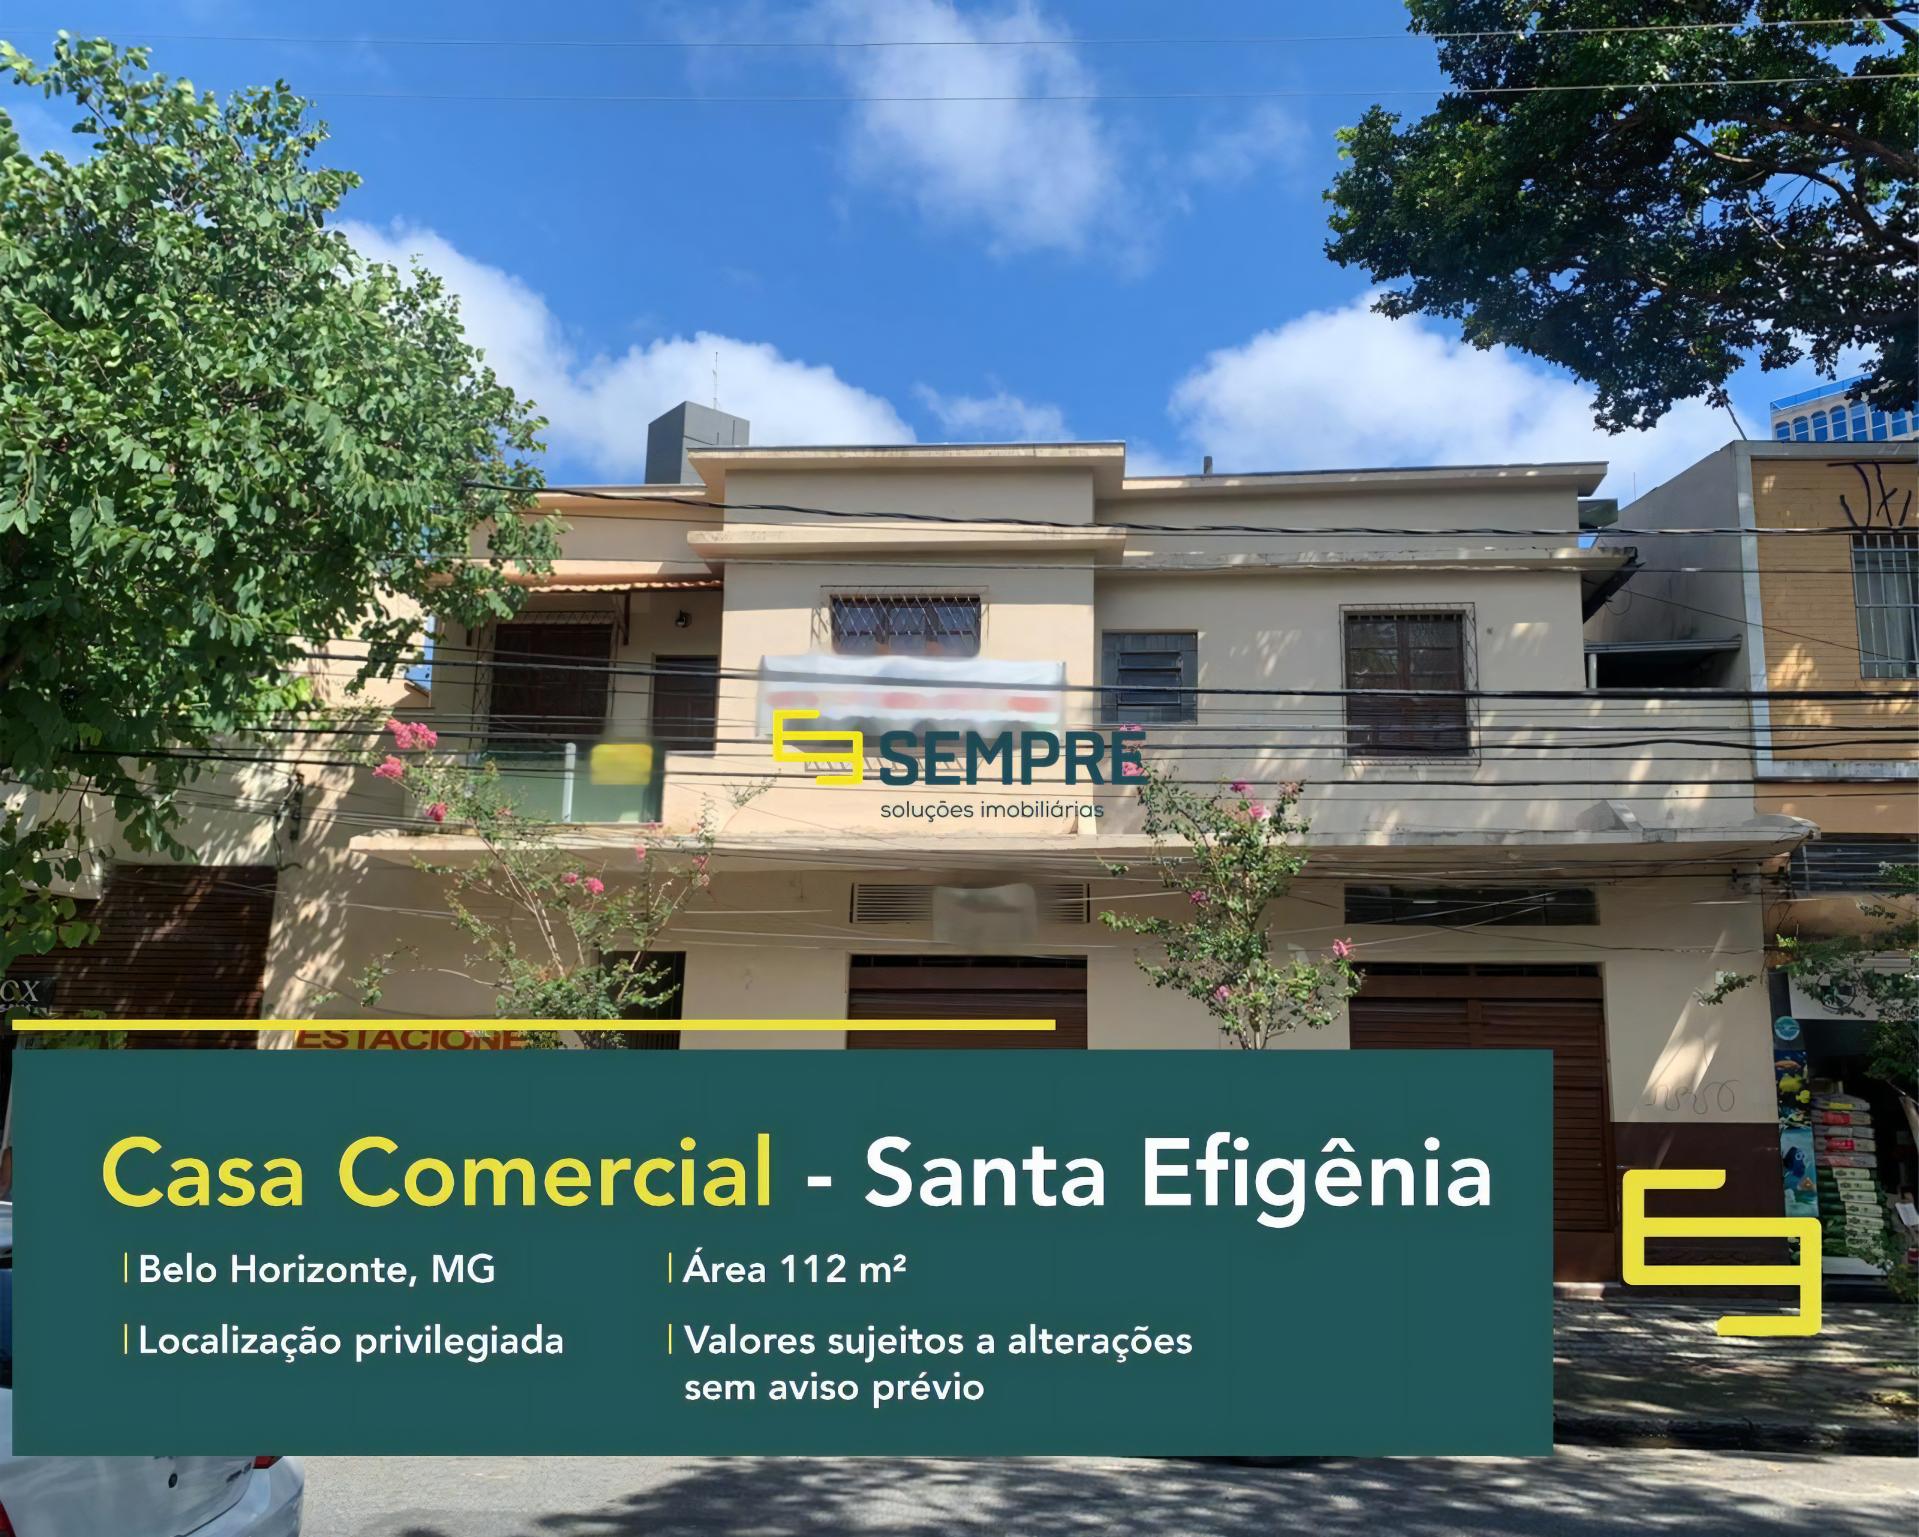 Casa comercial para locação no bairro Santa Efigênia em BH, excelente localização. O estabelecimento comercial conta com área de 112 m².